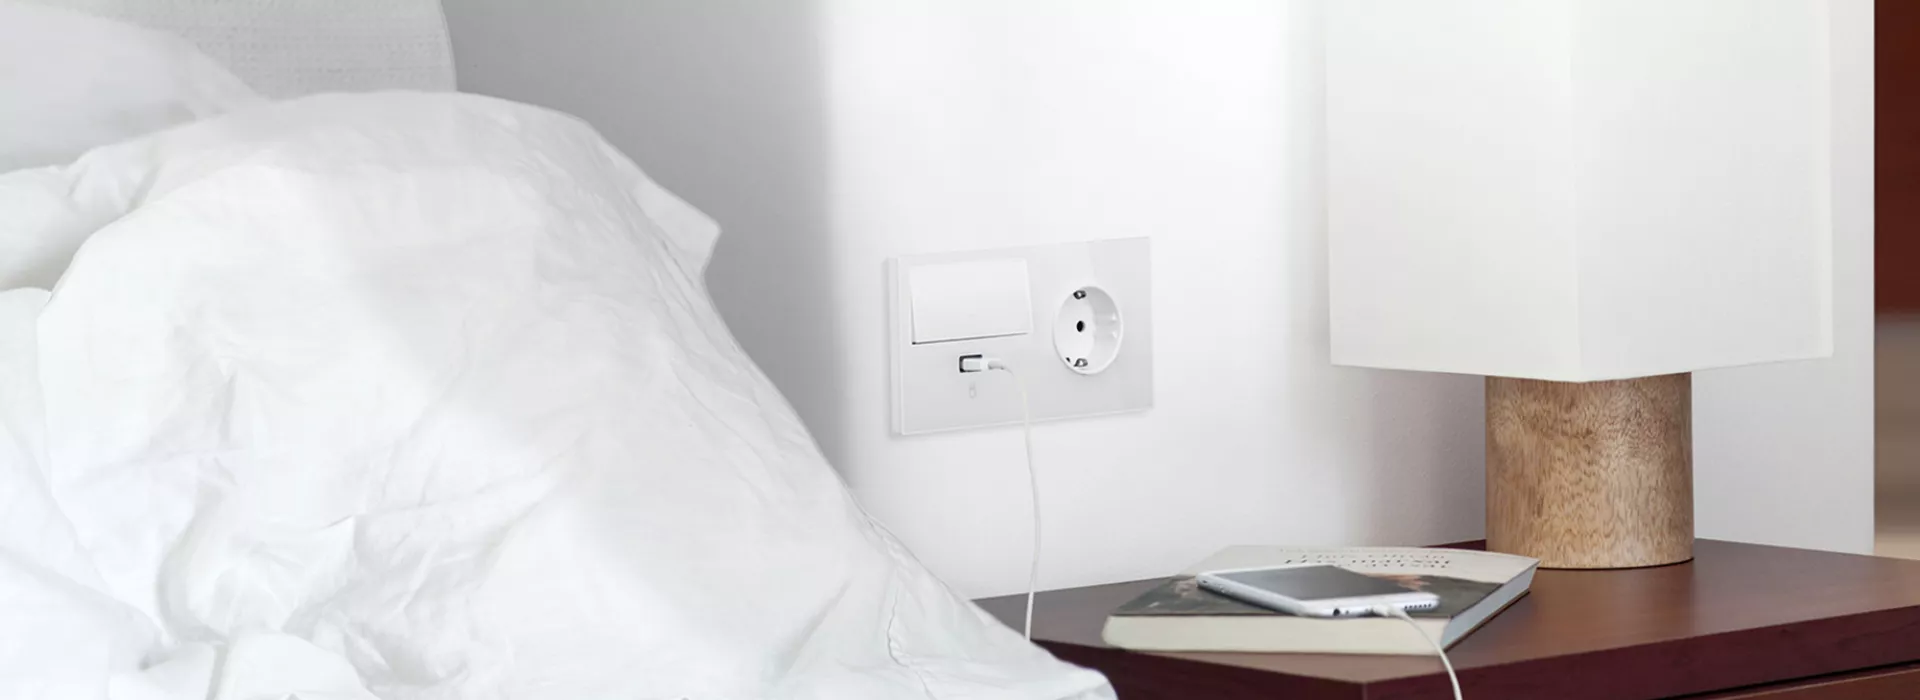 Cómo instalar un enchufe USB de manera segura en tu casa - Digital Trends  Español